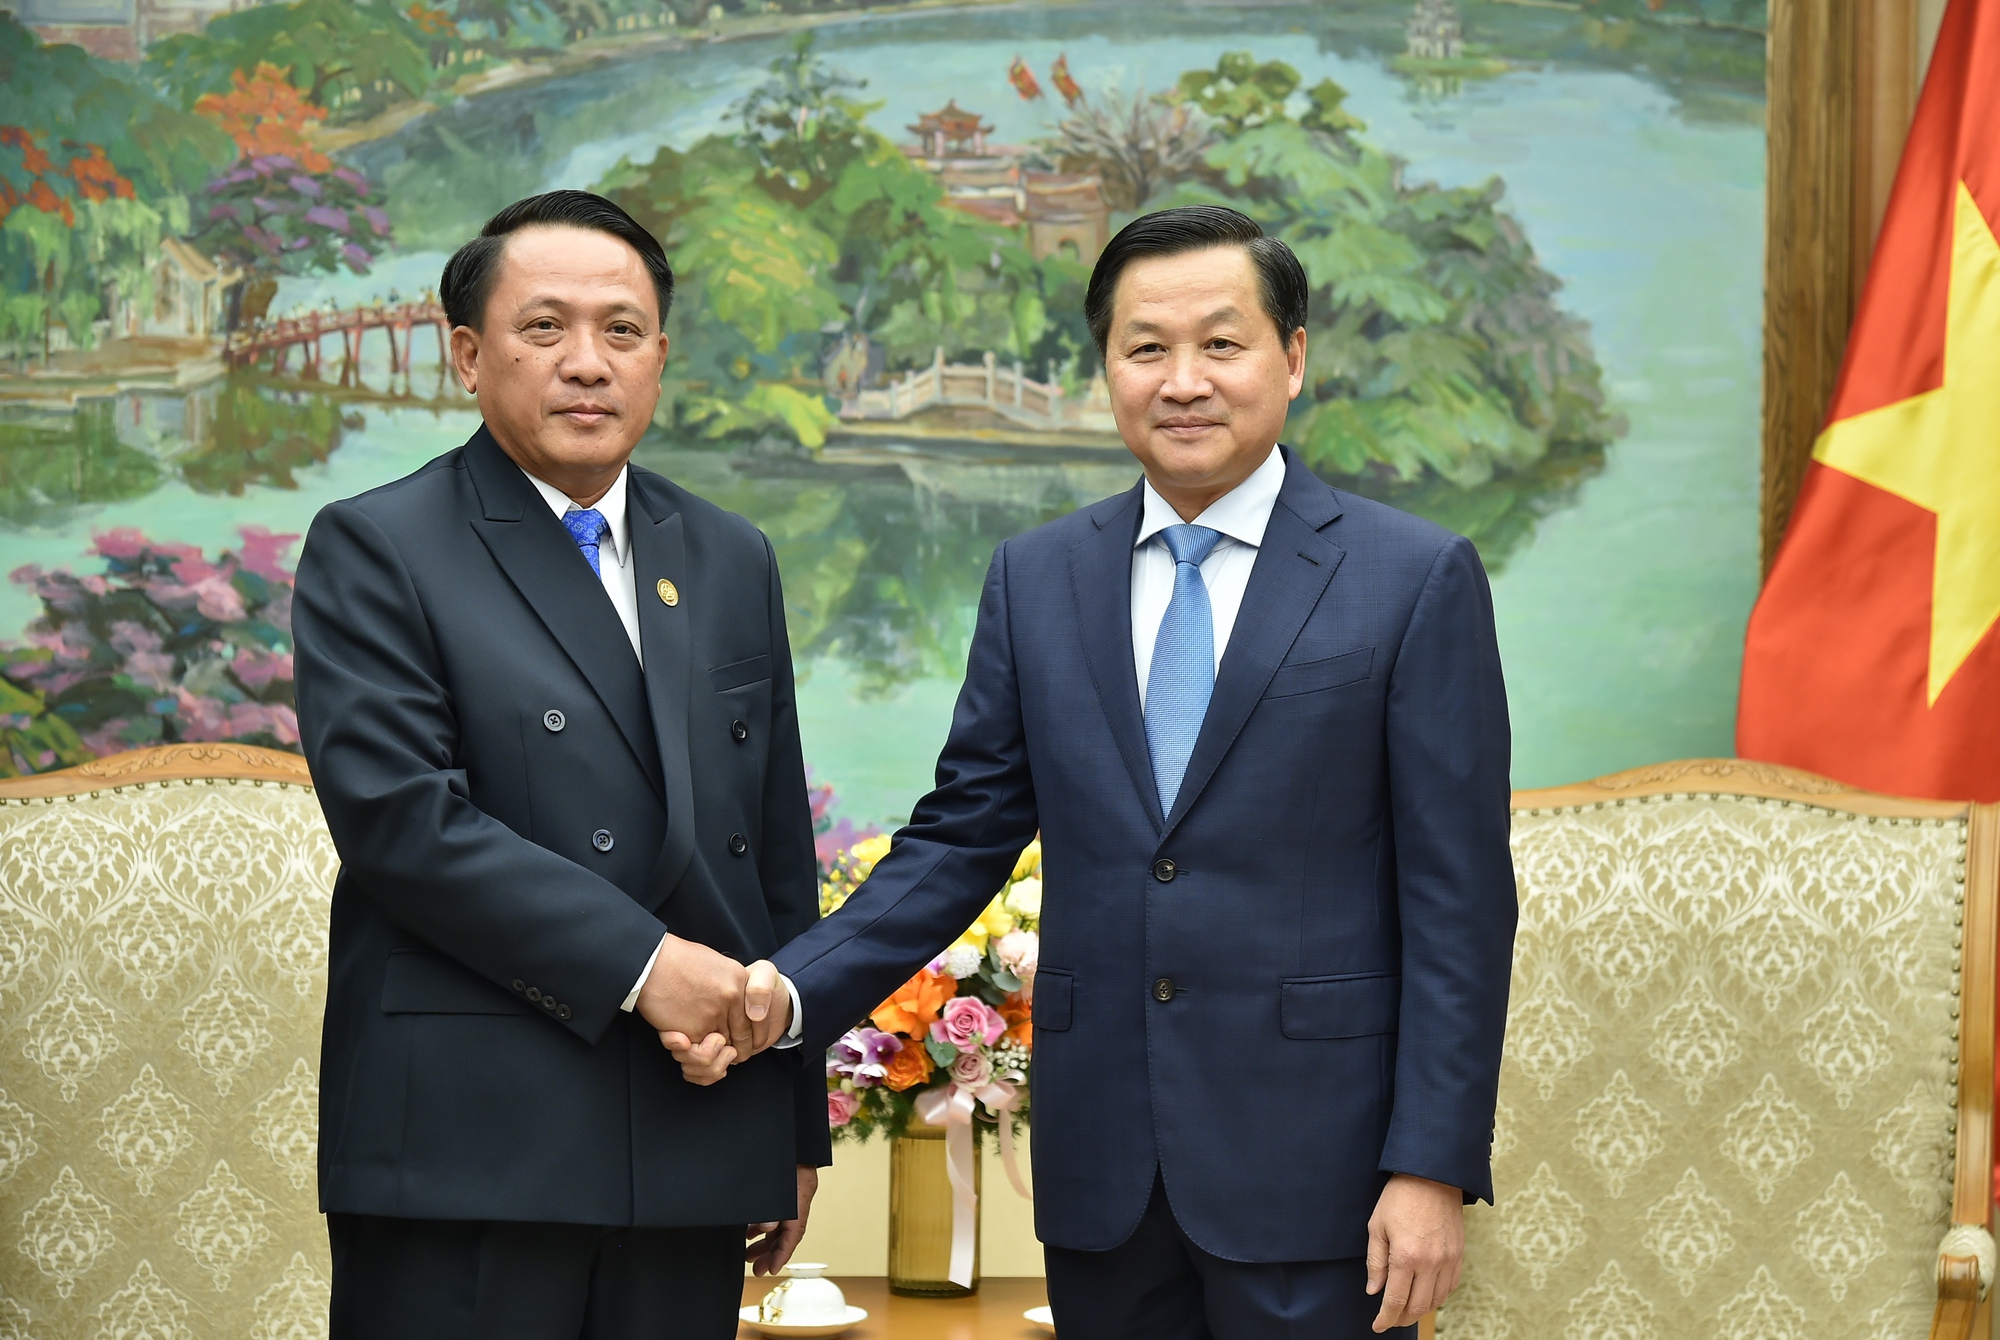 Chúng tôi hân hạnh giới thiệu về Phó Thủ tướng Lê Minh Khái, người đang góp phần rất lớn vào sự phát triển của đất nước. Với những hình ảnh mới nhất về ông, quý vị sẽ được hiểu rõ hơn về những cống hiến của Phó Thủ tướng và sự phát triển của đất nước dưới sự lãnh đạo tài ba của ông.